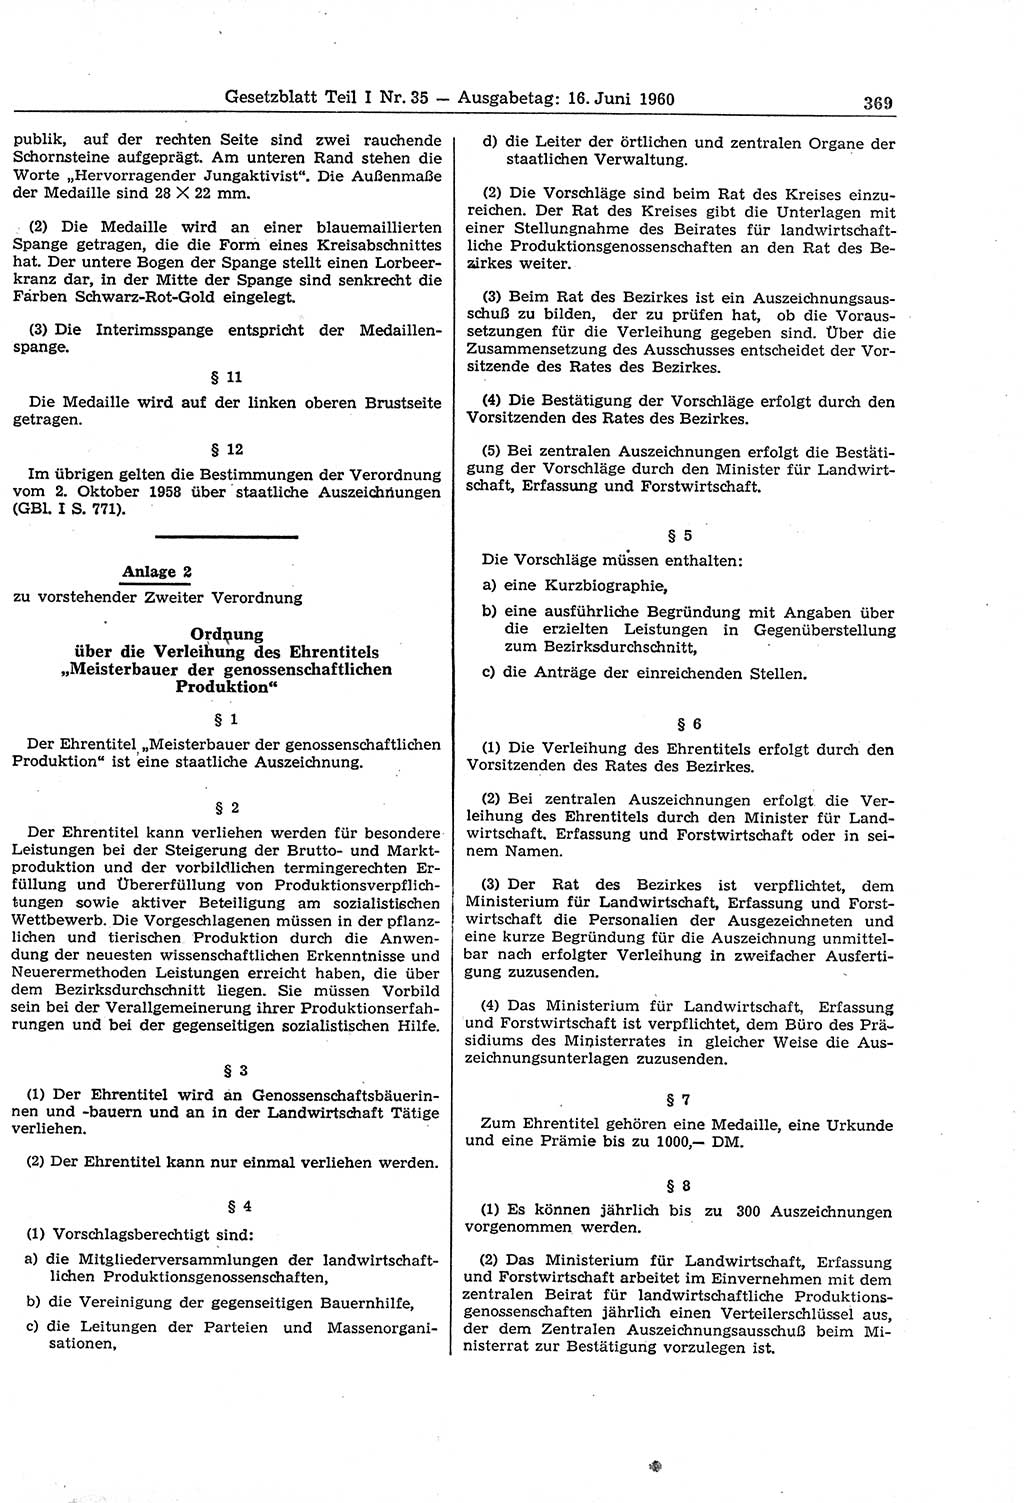 Gesetzblatt (GBl.) der Deutschen Demokratischen Republik (DDR) Teil Ⅰ 1960, Seite 369 (GBl. DDR Ⅰ 1960, S. 369)